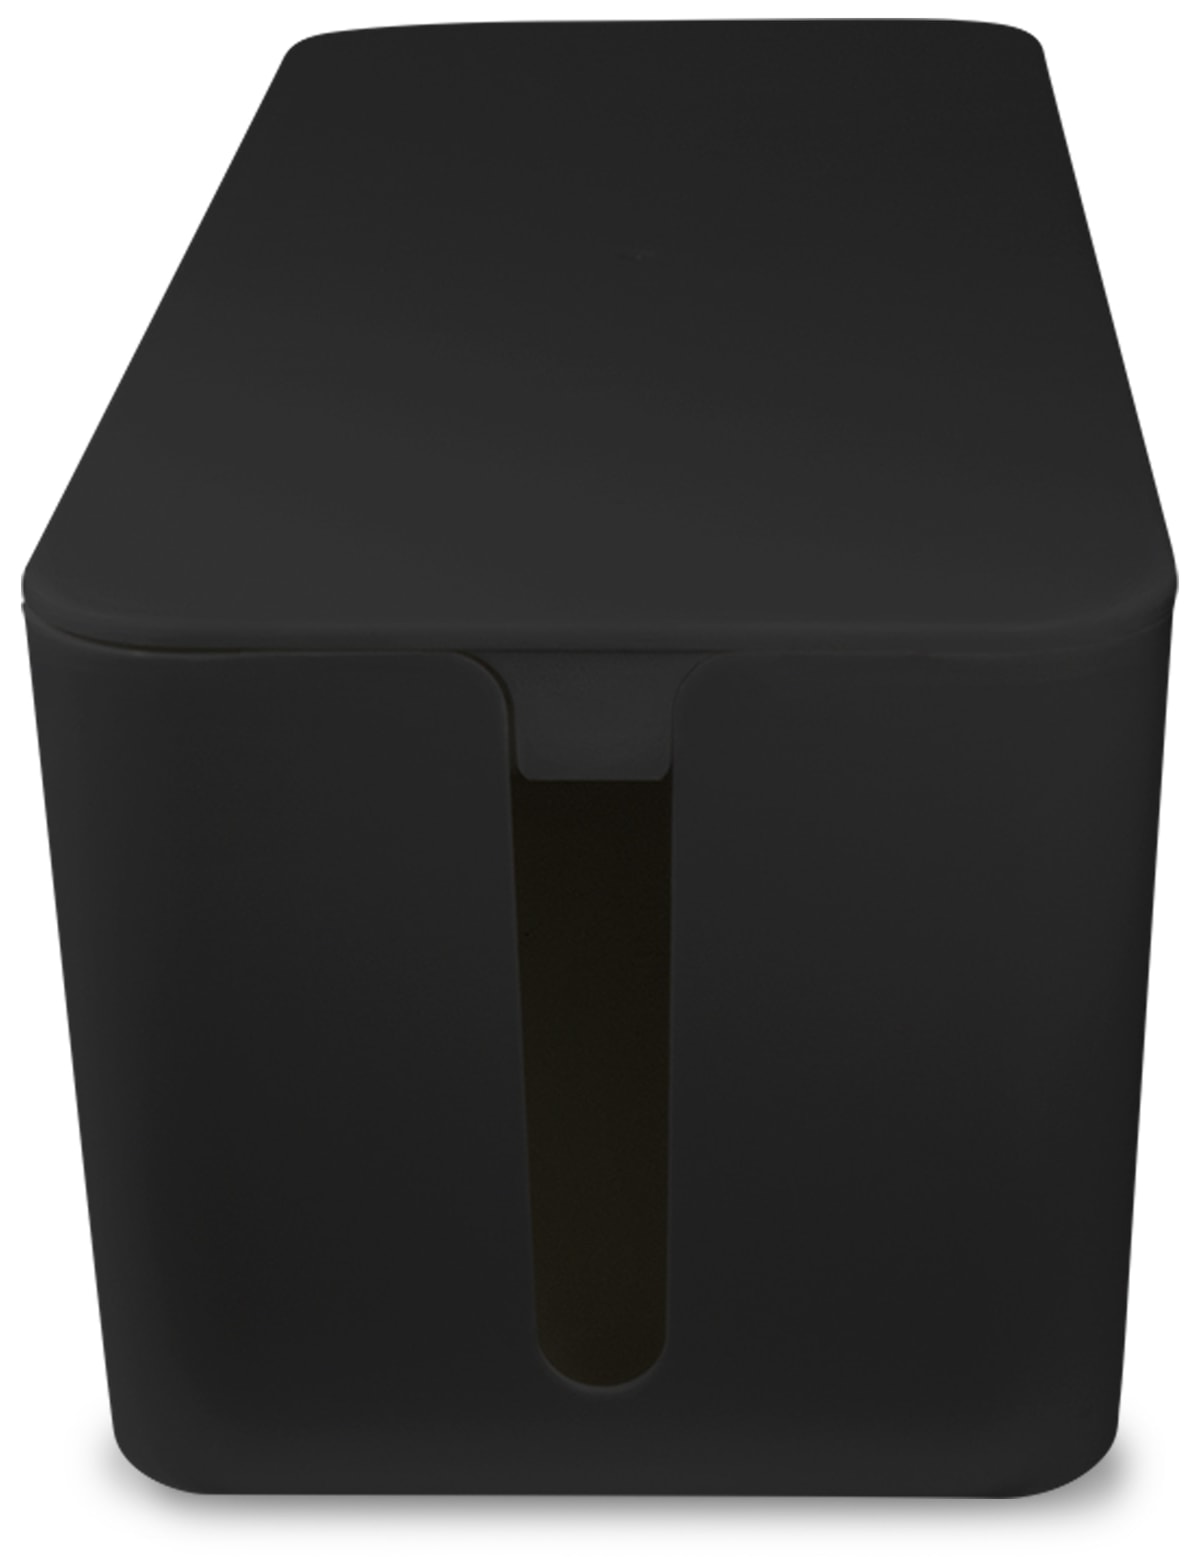 LOGILINK Kabelbox KAB0061, schwarz